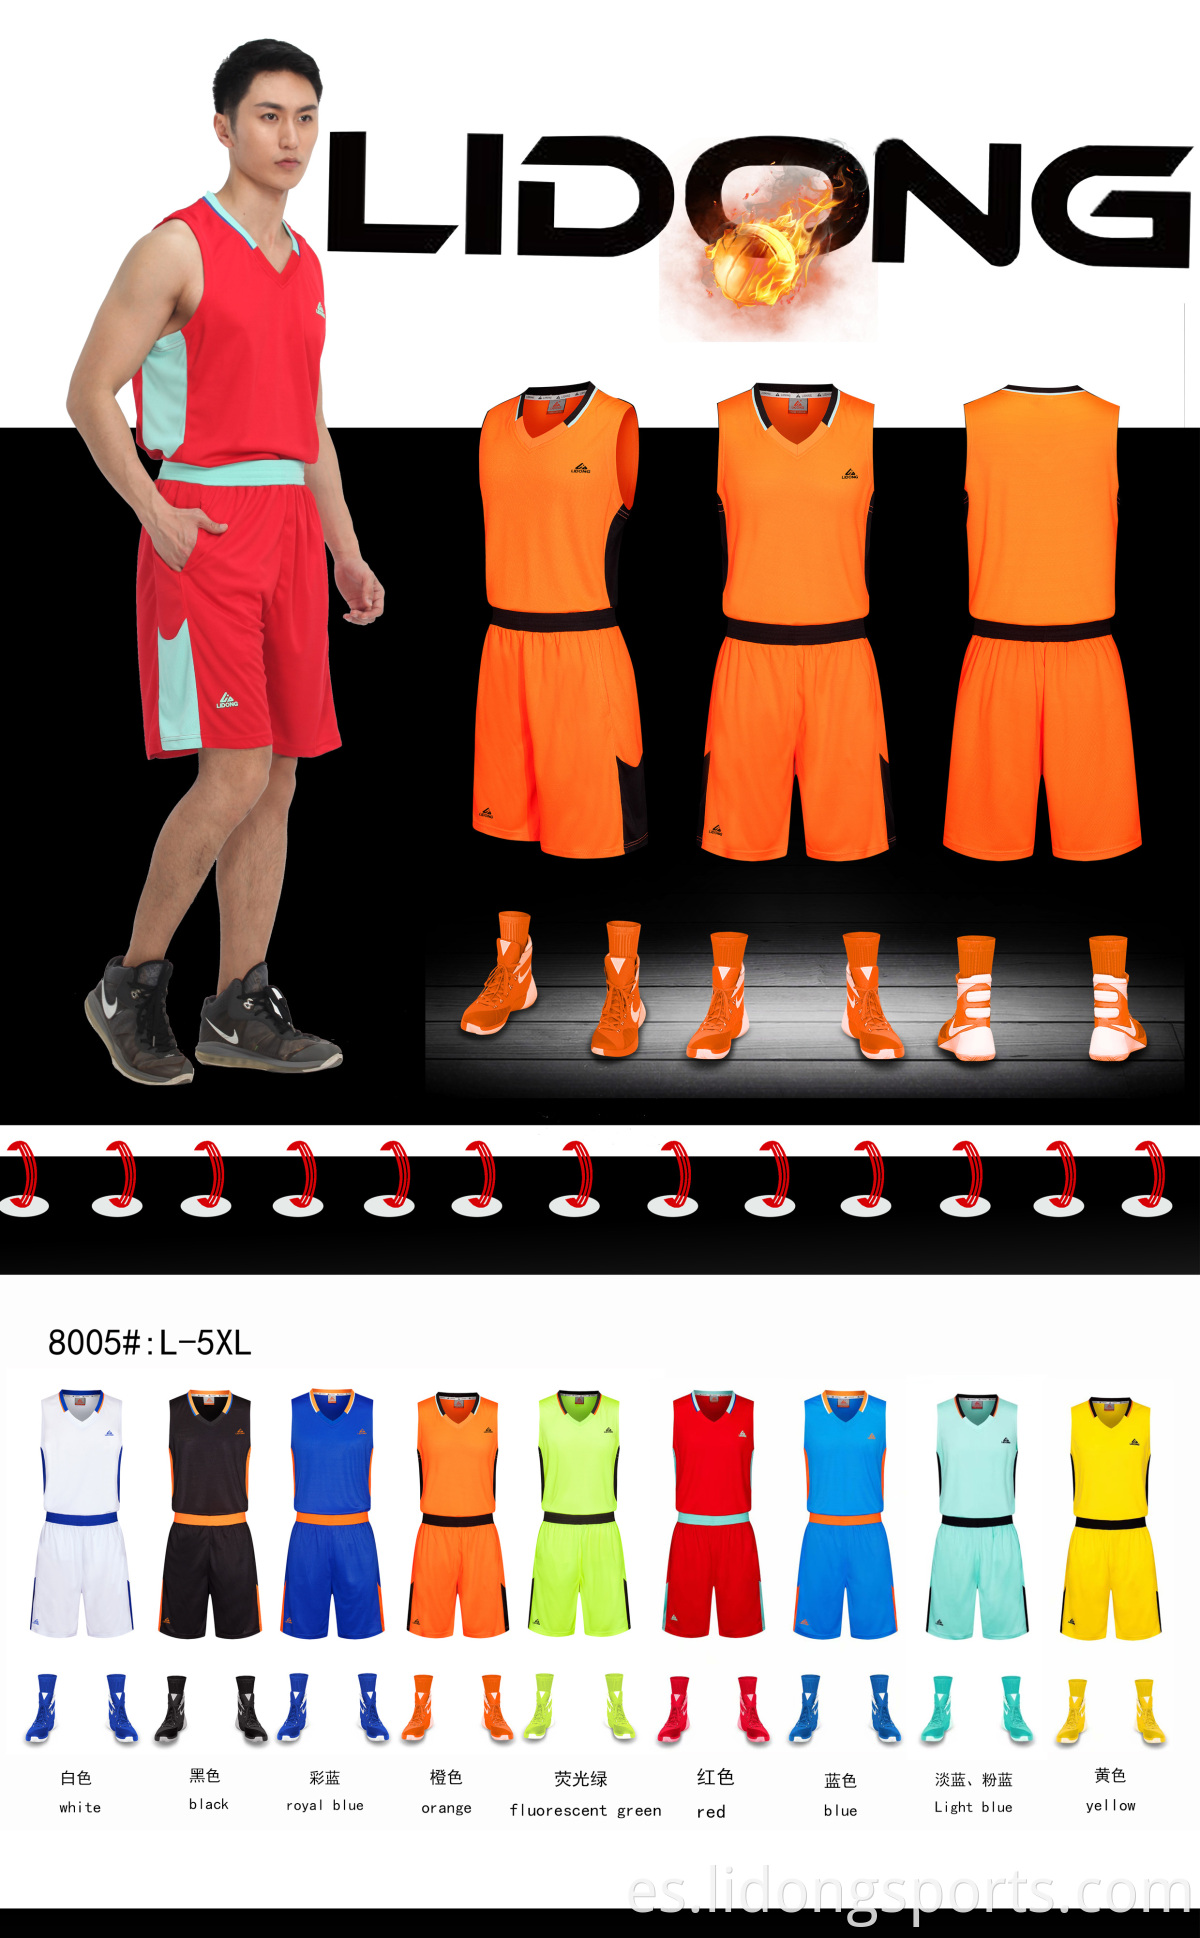 Uniformes juveniles al por mayor de uniformes de baloncesto reversible baratos nuevos camisetas de baloncesto de diseño